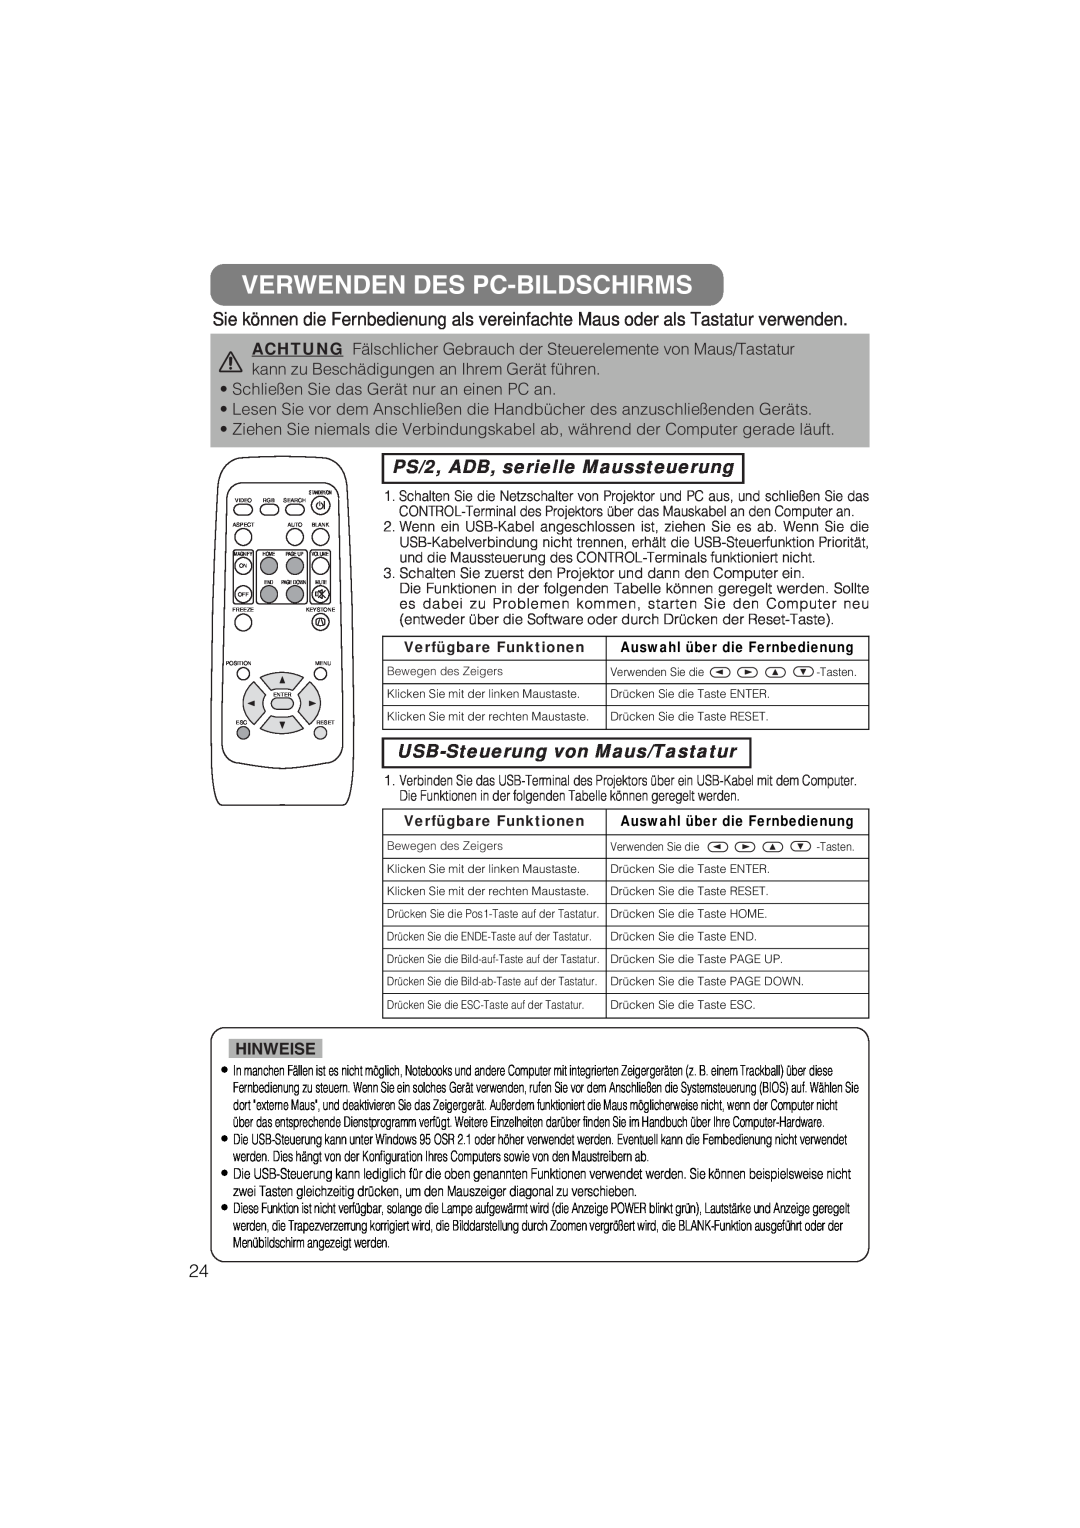 Liesegang 293 Verwenden Des Pc-Bildschirms, PS/2, ADB, serielle Maussteuerung, USB-Steuerung von Maus/Tastatur, Hinweise 